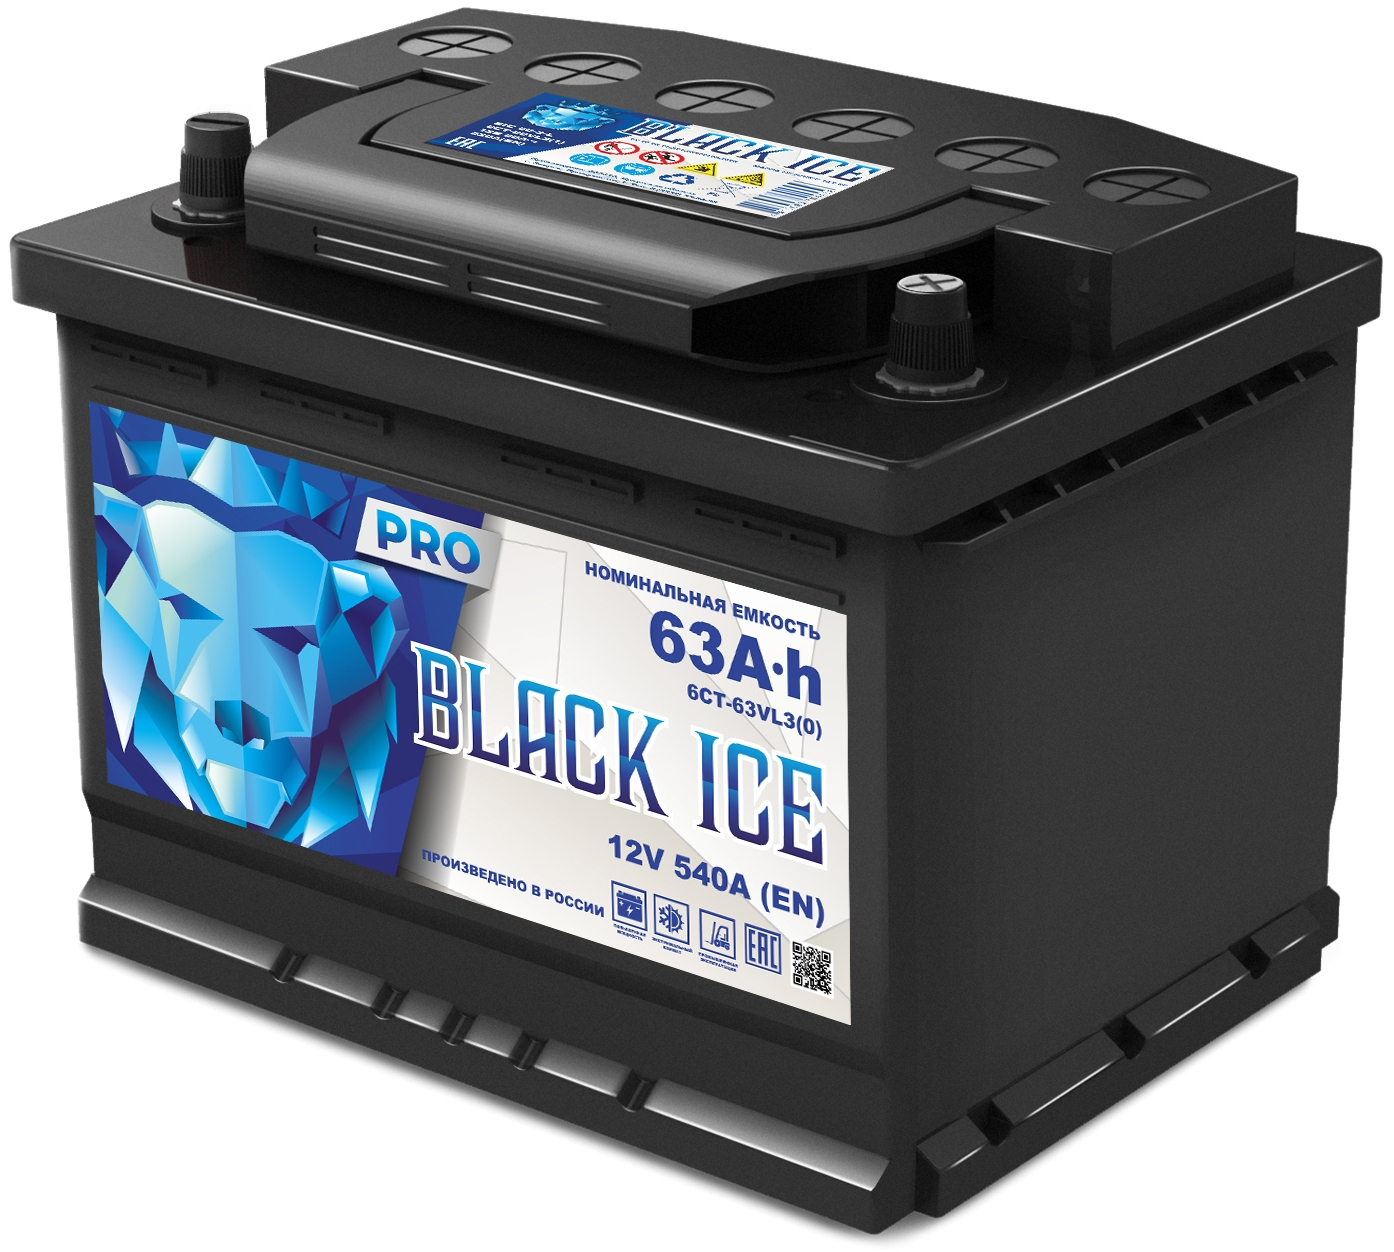 Автомобильный аккумулятор BLACK ICE Pro 6СТ-63.0 VL